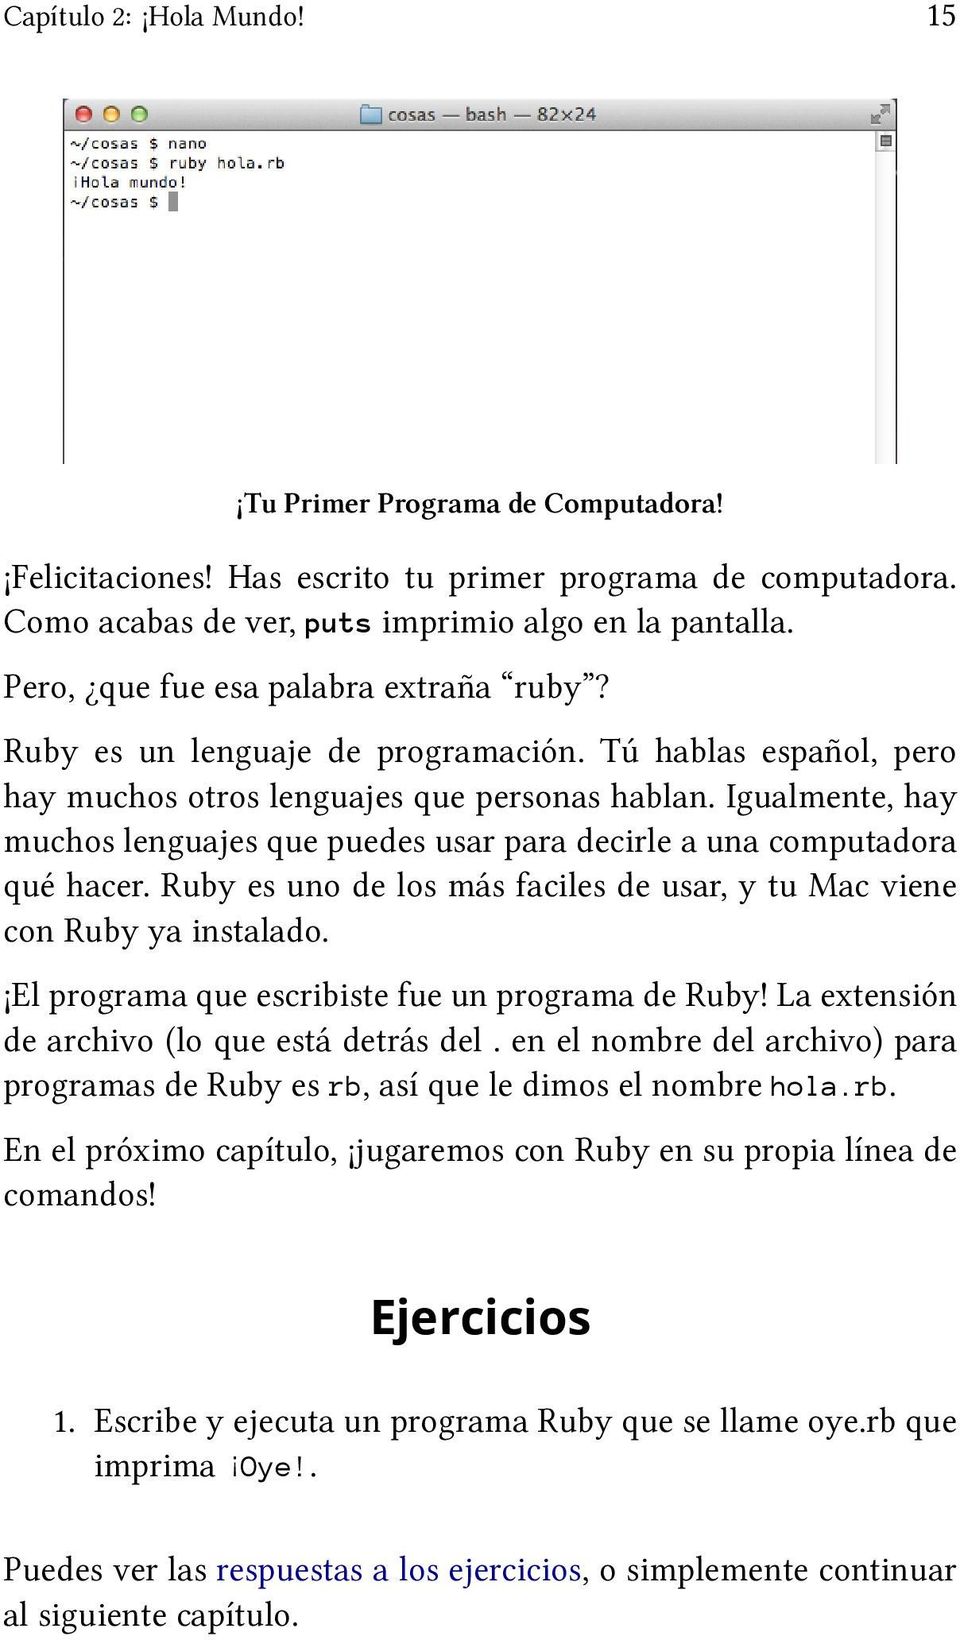 Igualmente, hay muchos lenguajes que puedes usar para decirle a una computadora qué hacer. Ruby es uno de los más faciles de usar, y tu Mac viene con Ruby ya instalado.